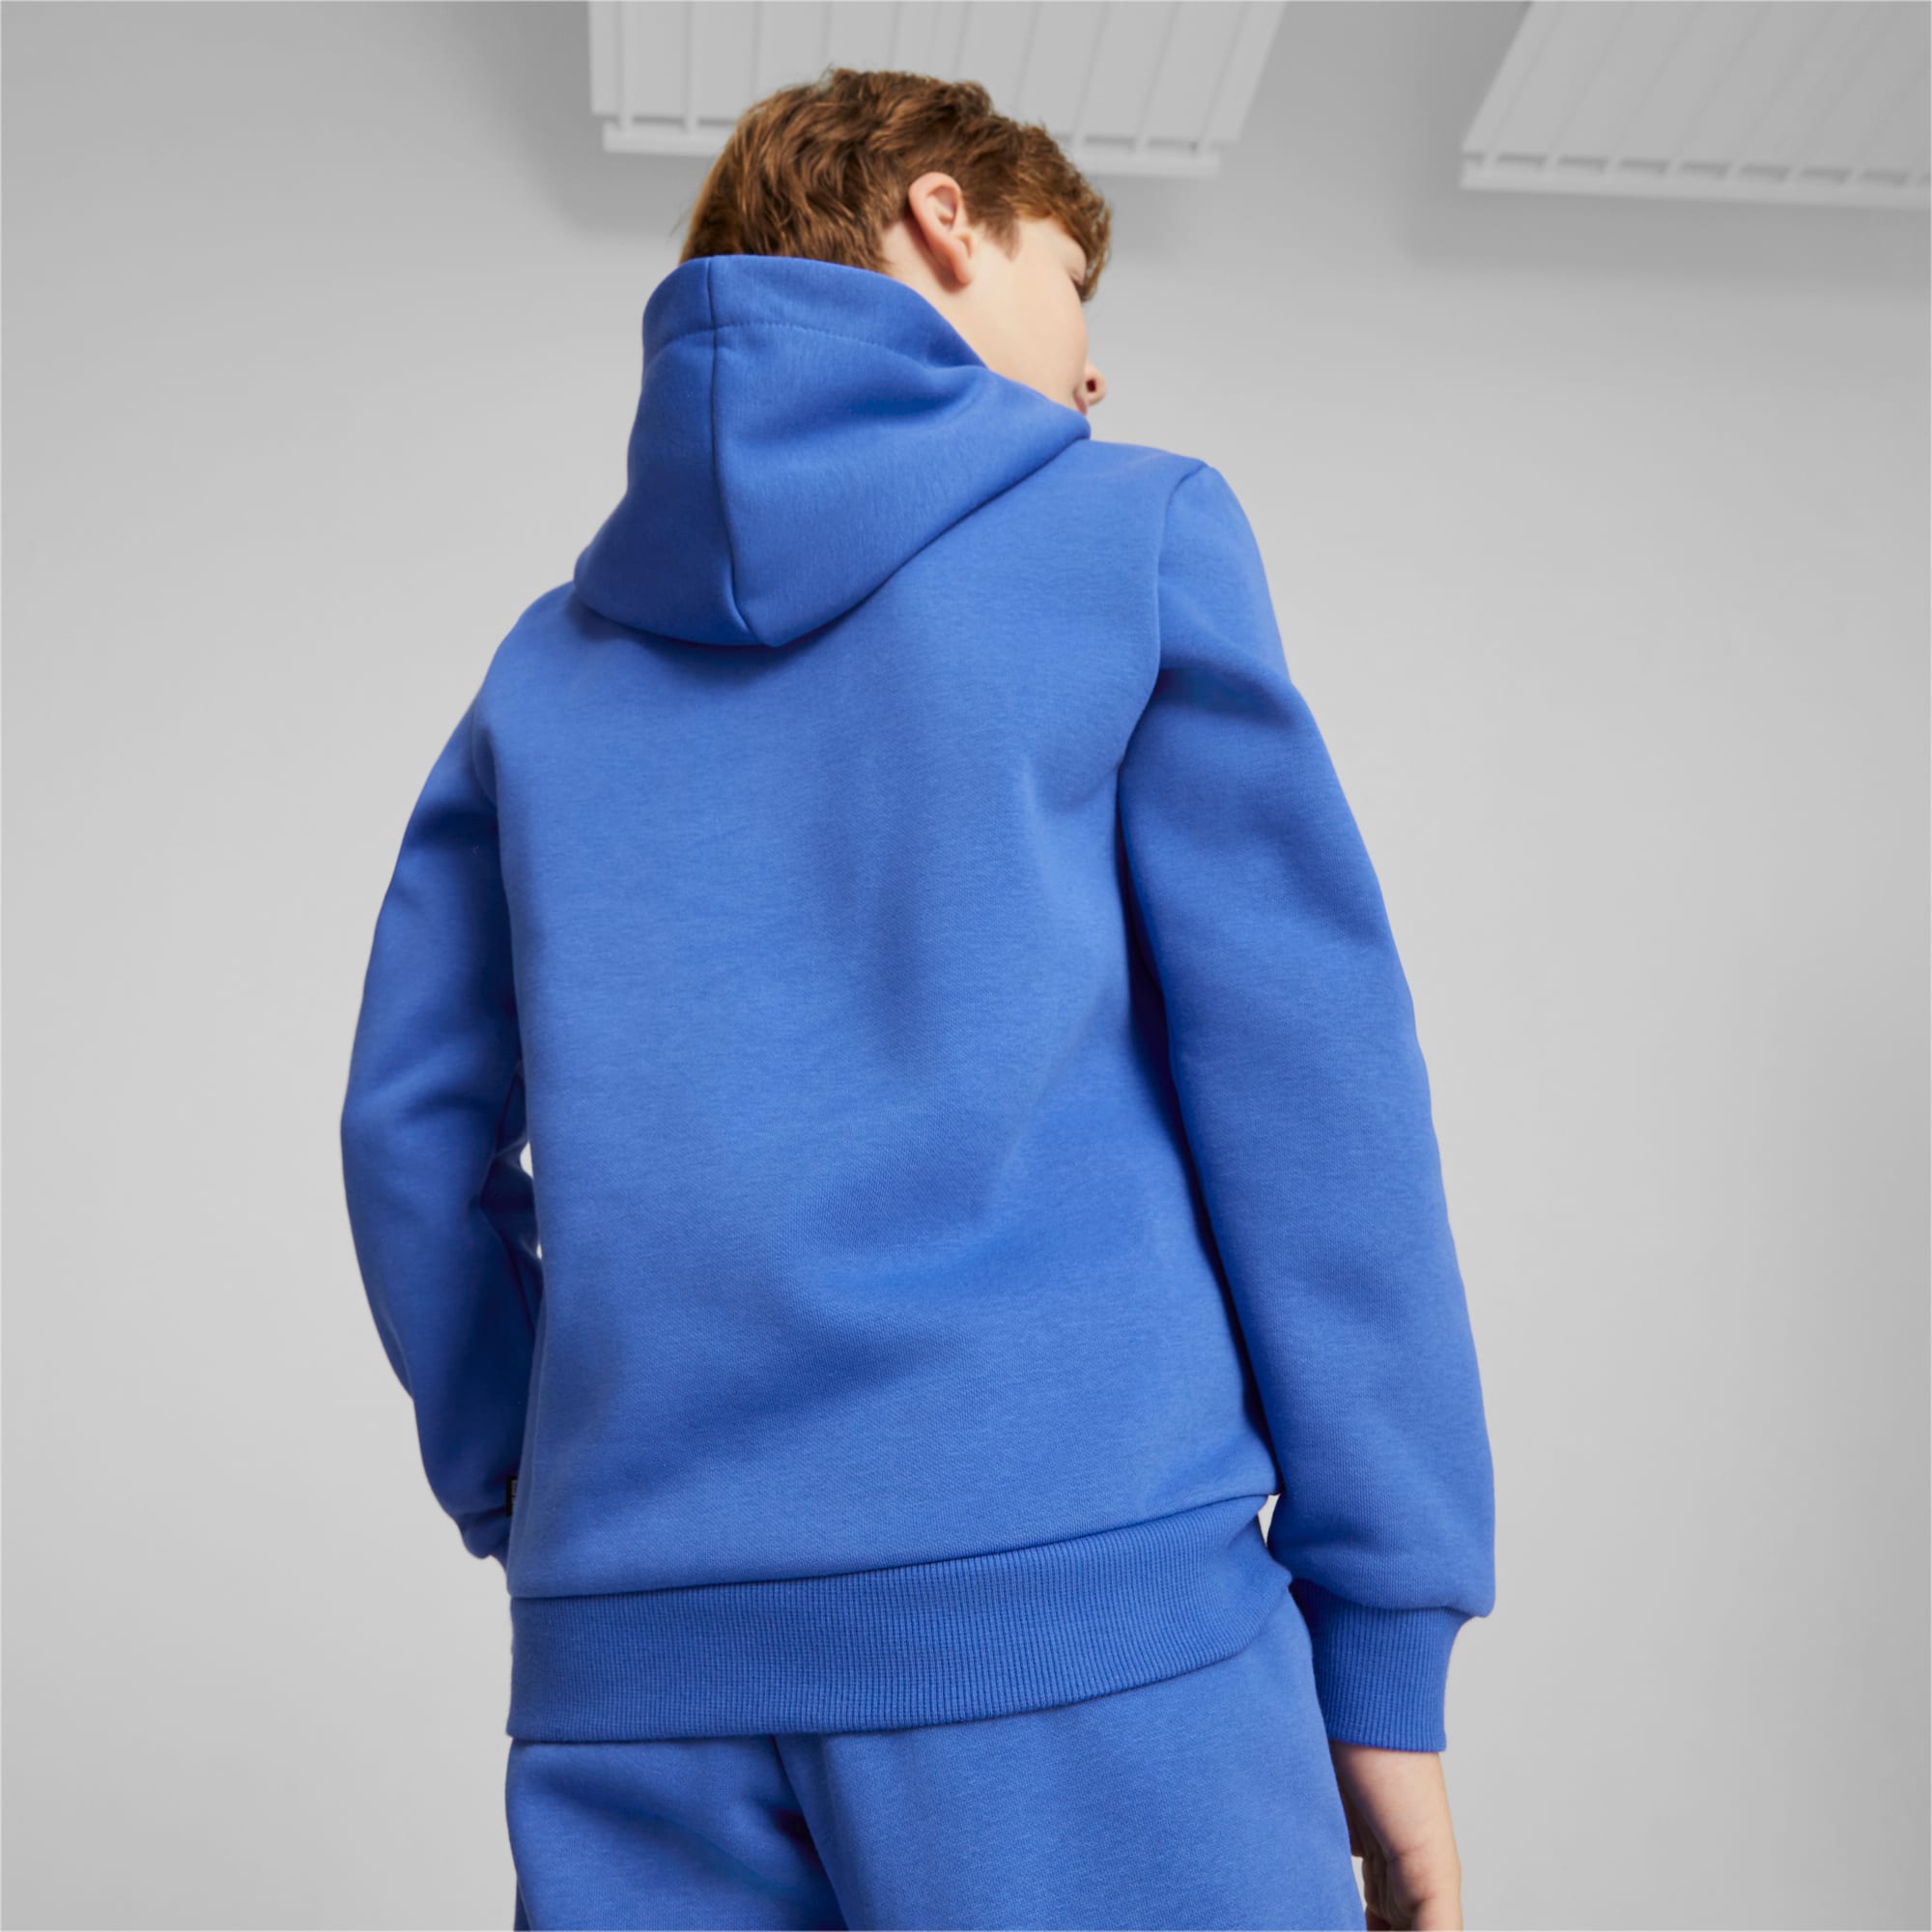 PUMA Essentials+ Two-Tone Big Logo Jugend Hoodie Für Kinder, Blau, Größe: 116, Kleidung